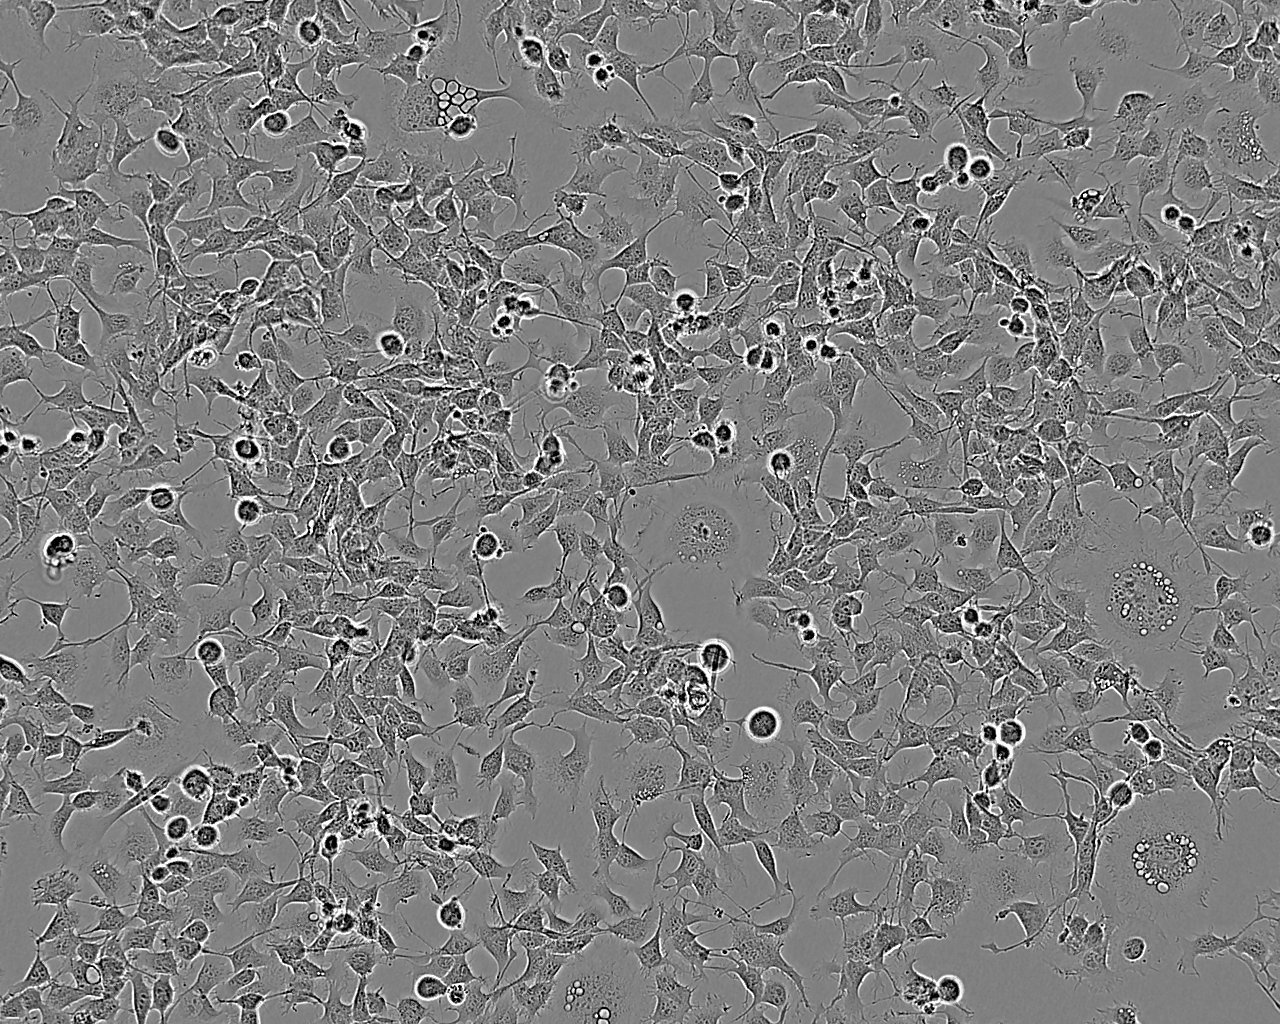 WM239A Cell:人黑色素瘤细胞系